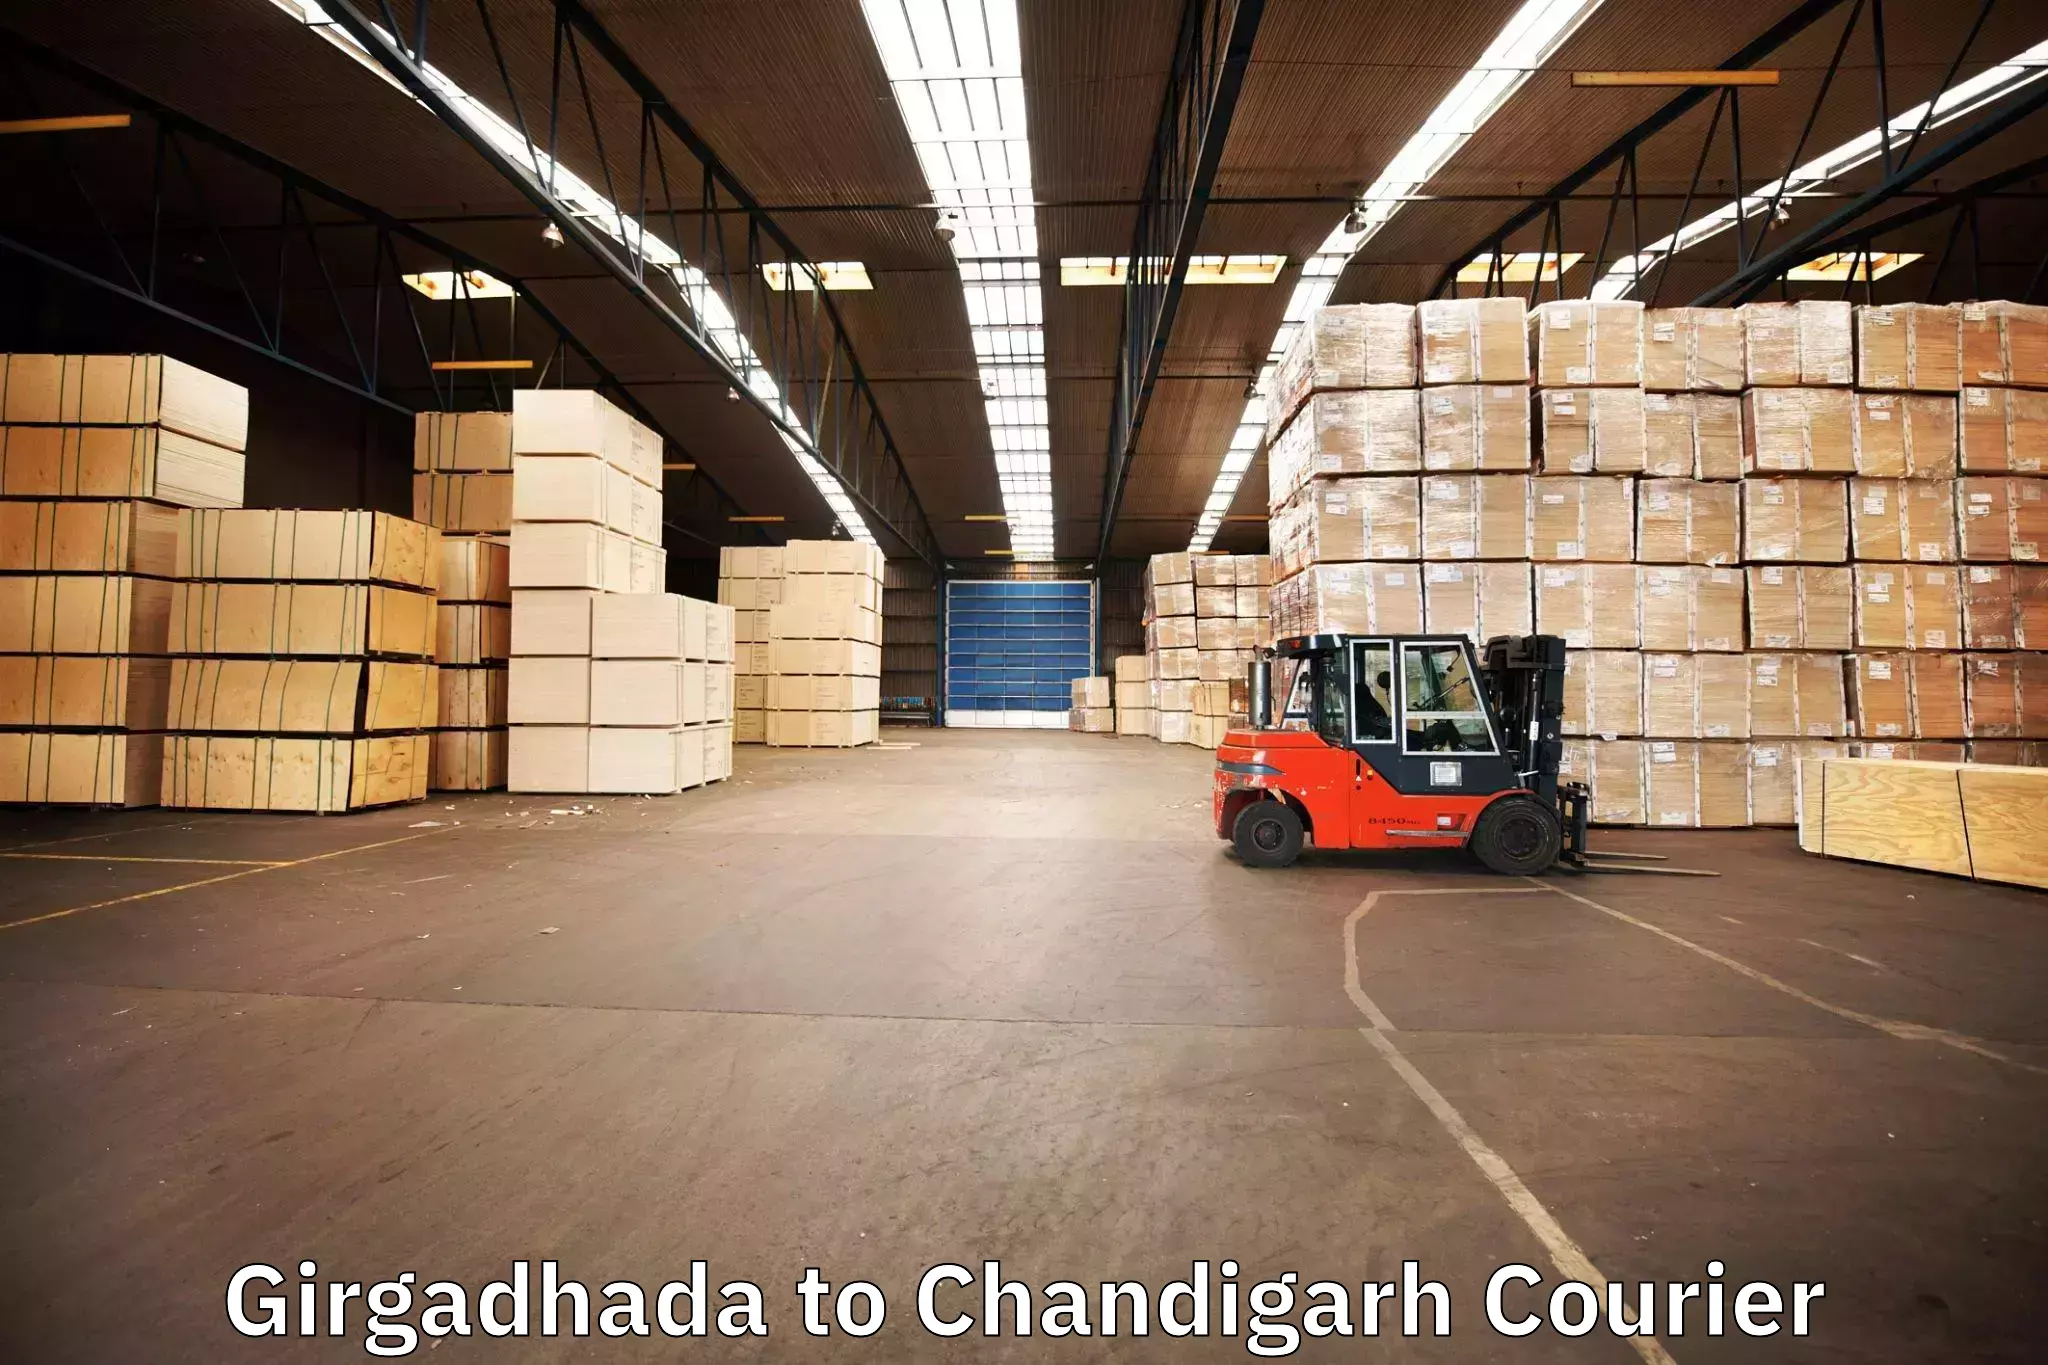 Furniture relocation experts Girgadhada to Chandigarh